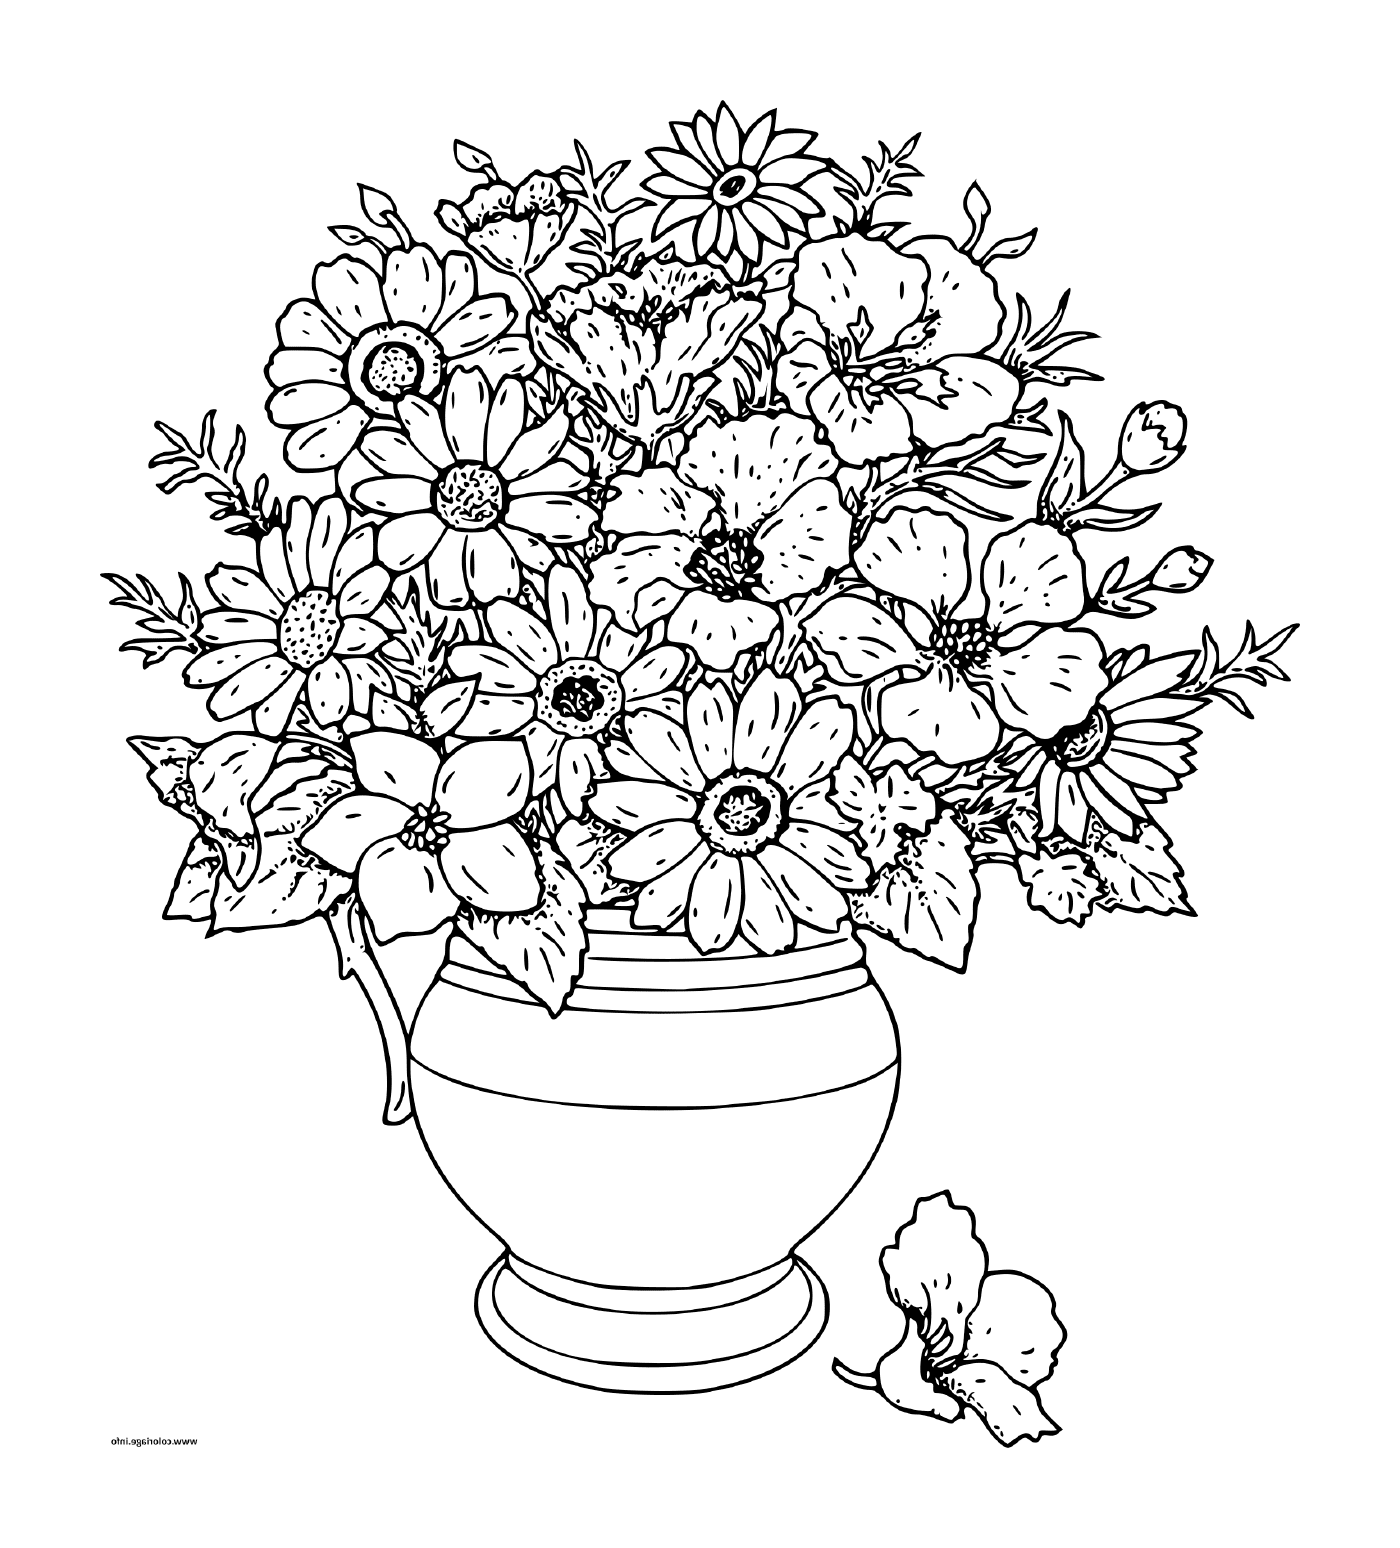  Um buquê de flores em um vaso 